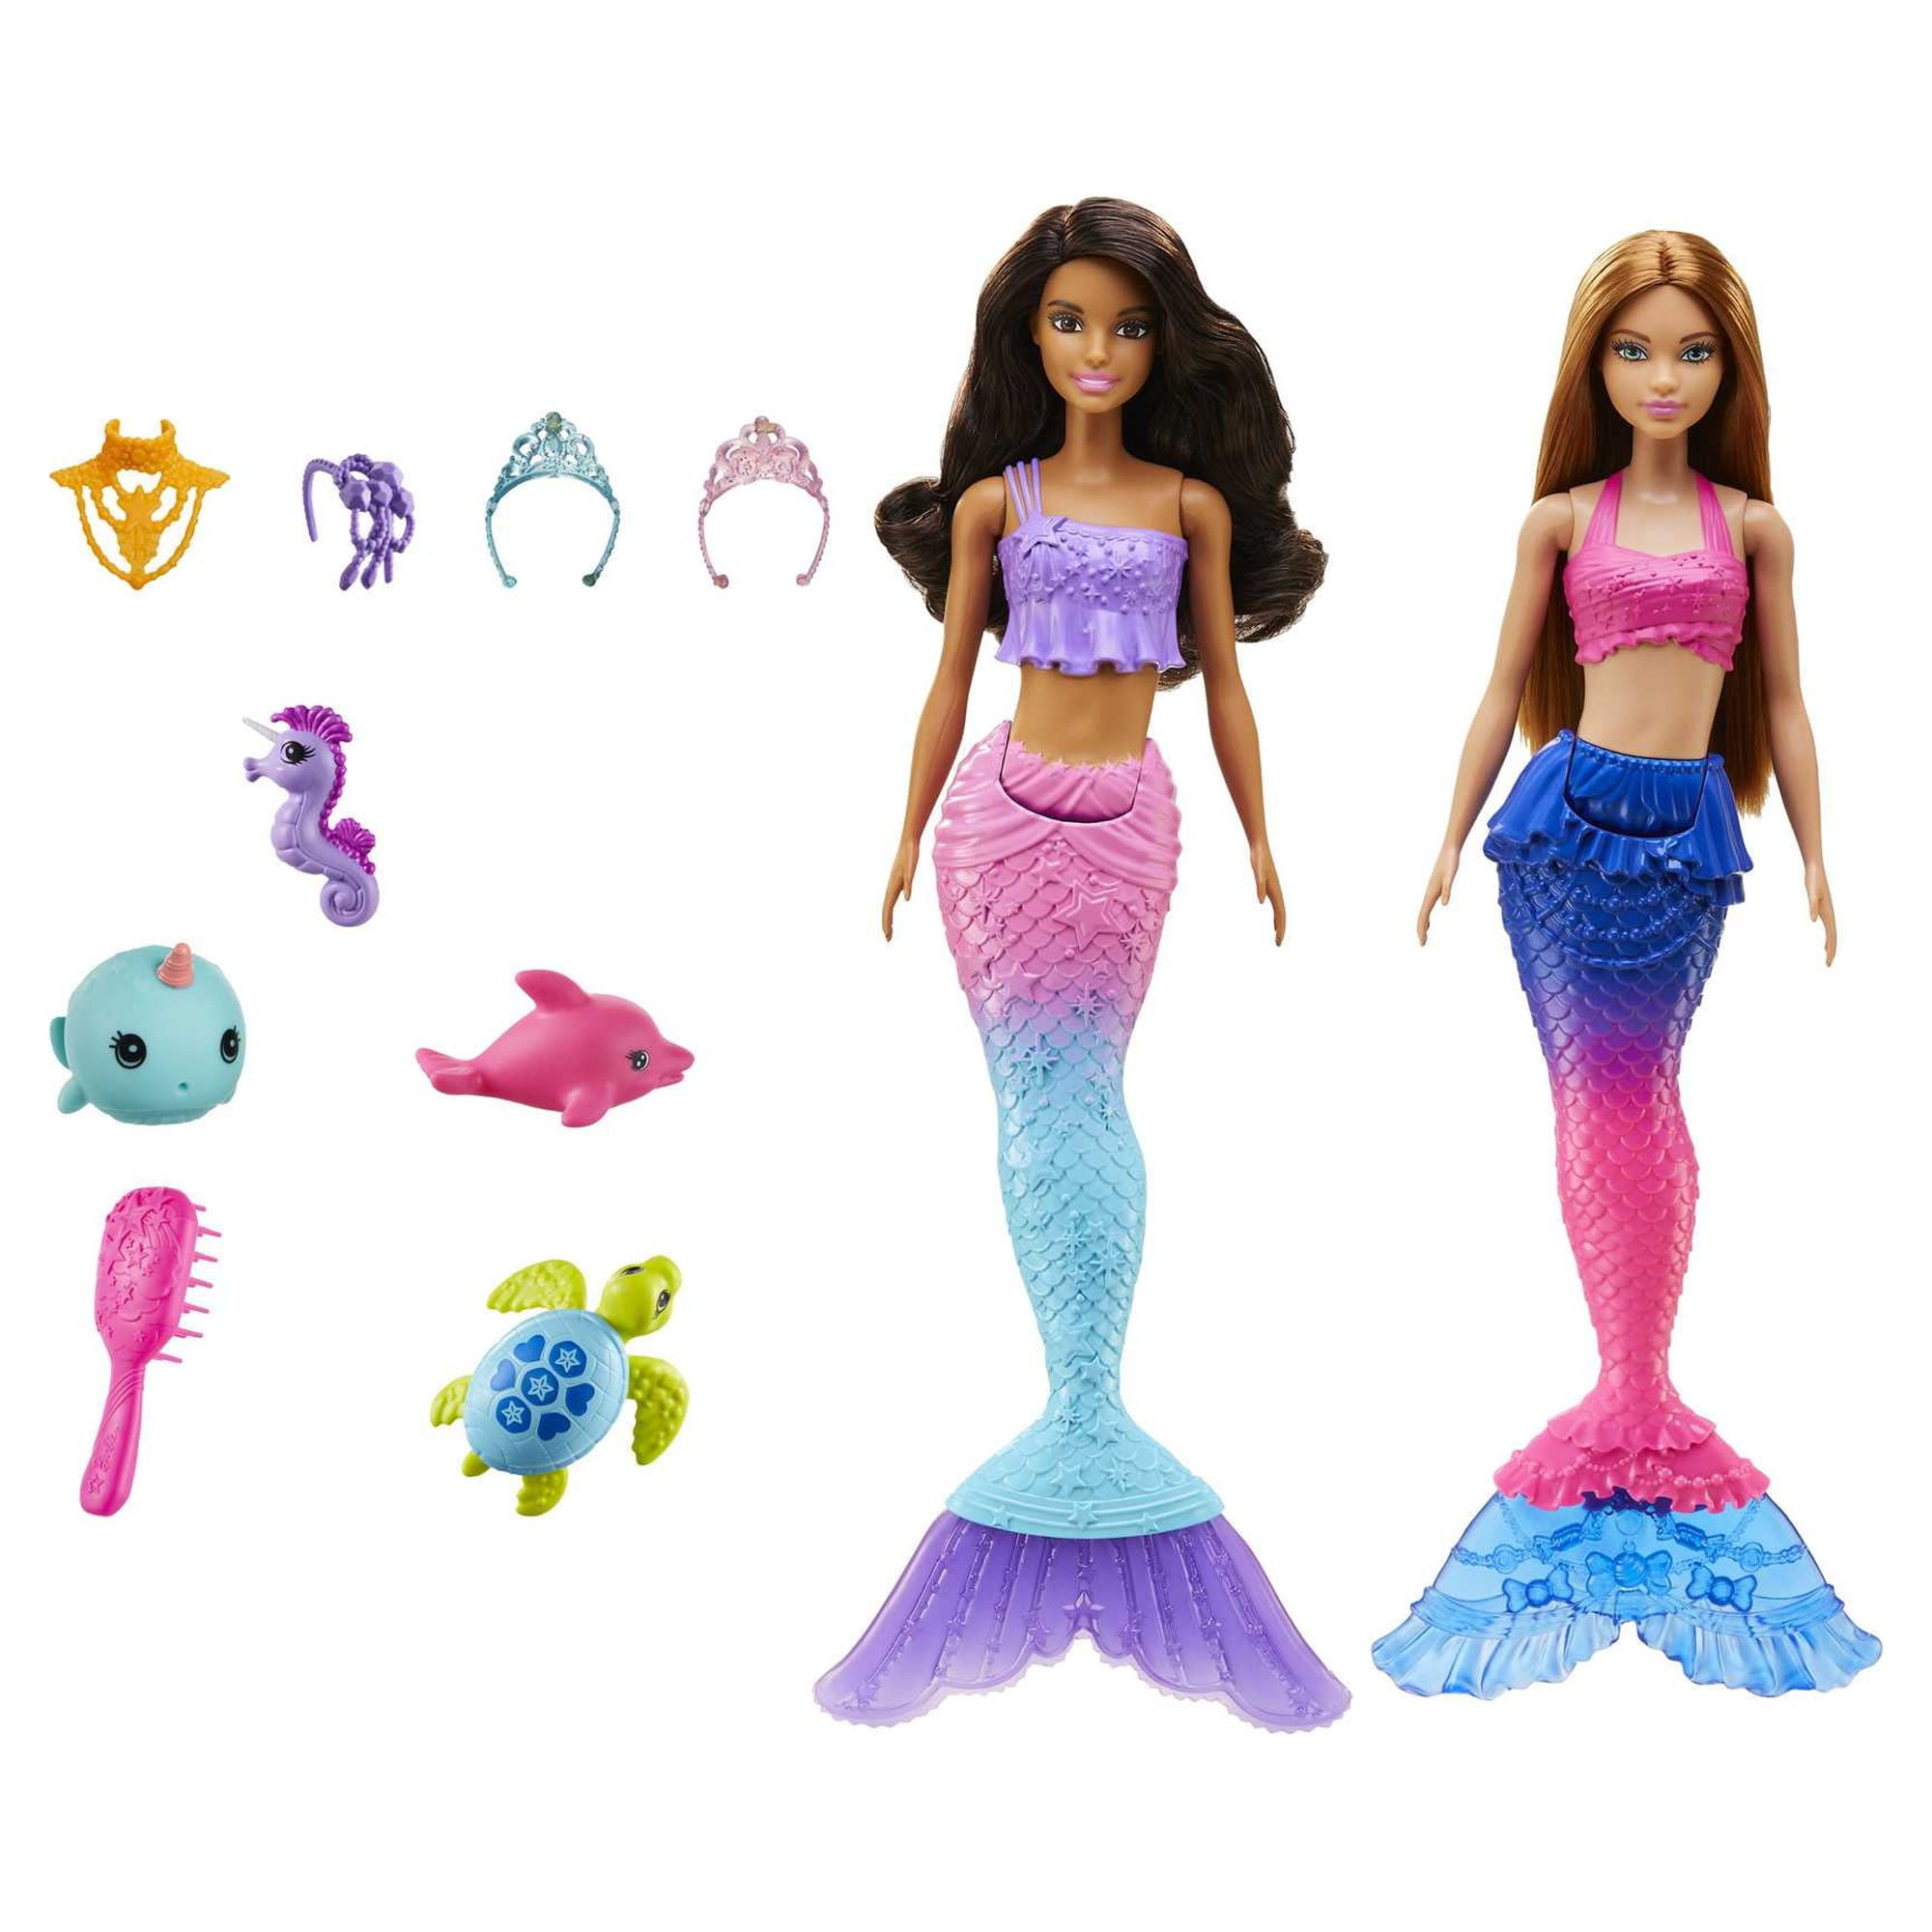 Play Barbie In A Mermaid Tale game free online